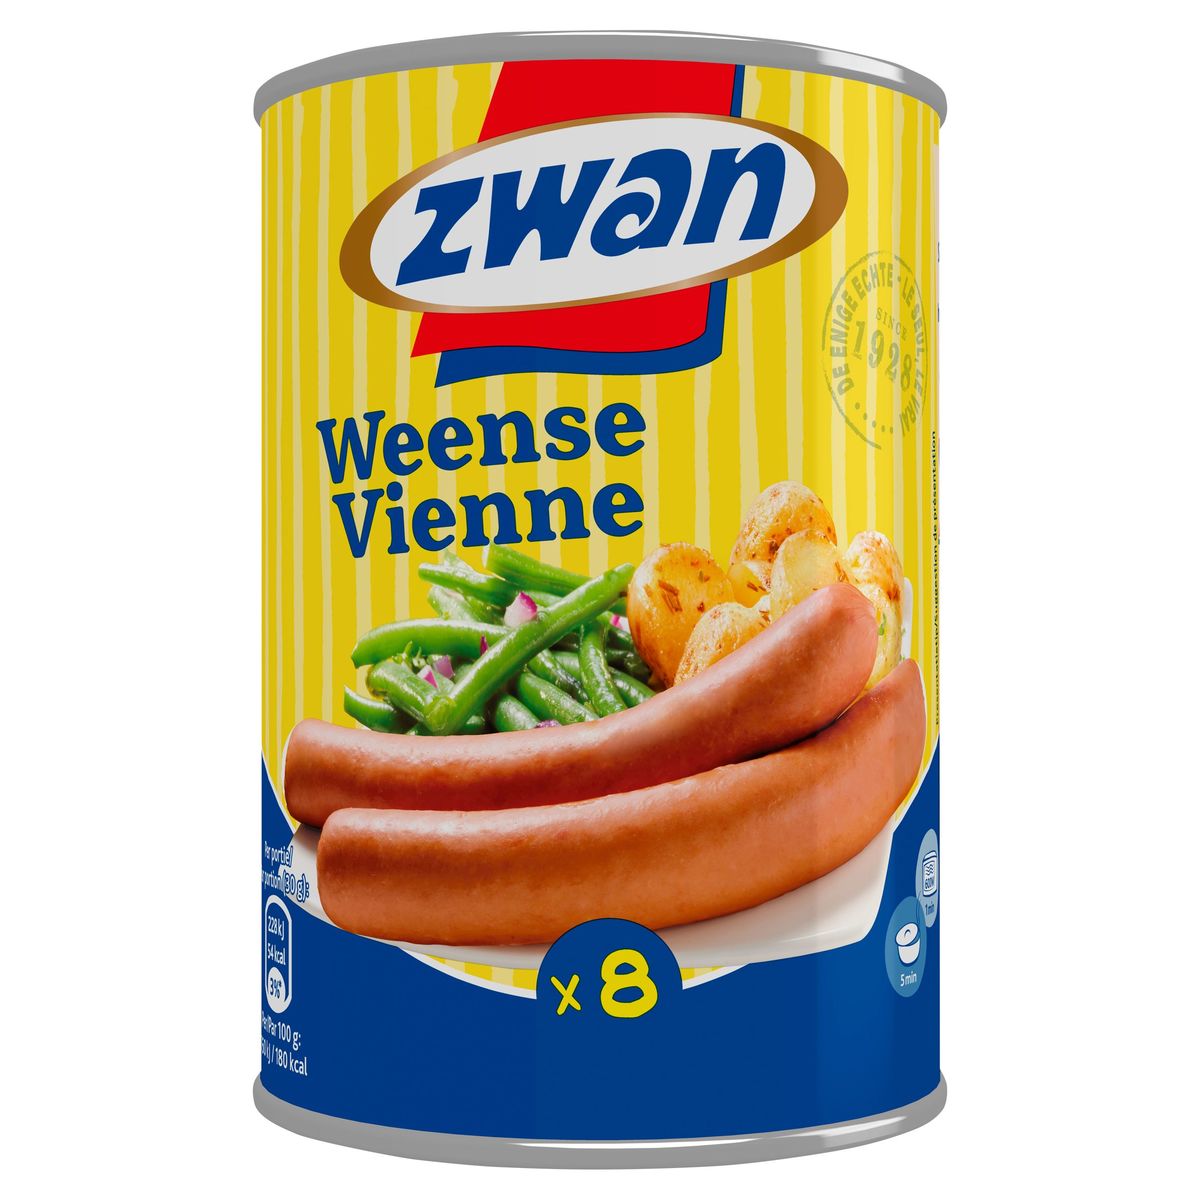 Zwan  Worst  weense Snack 420 g